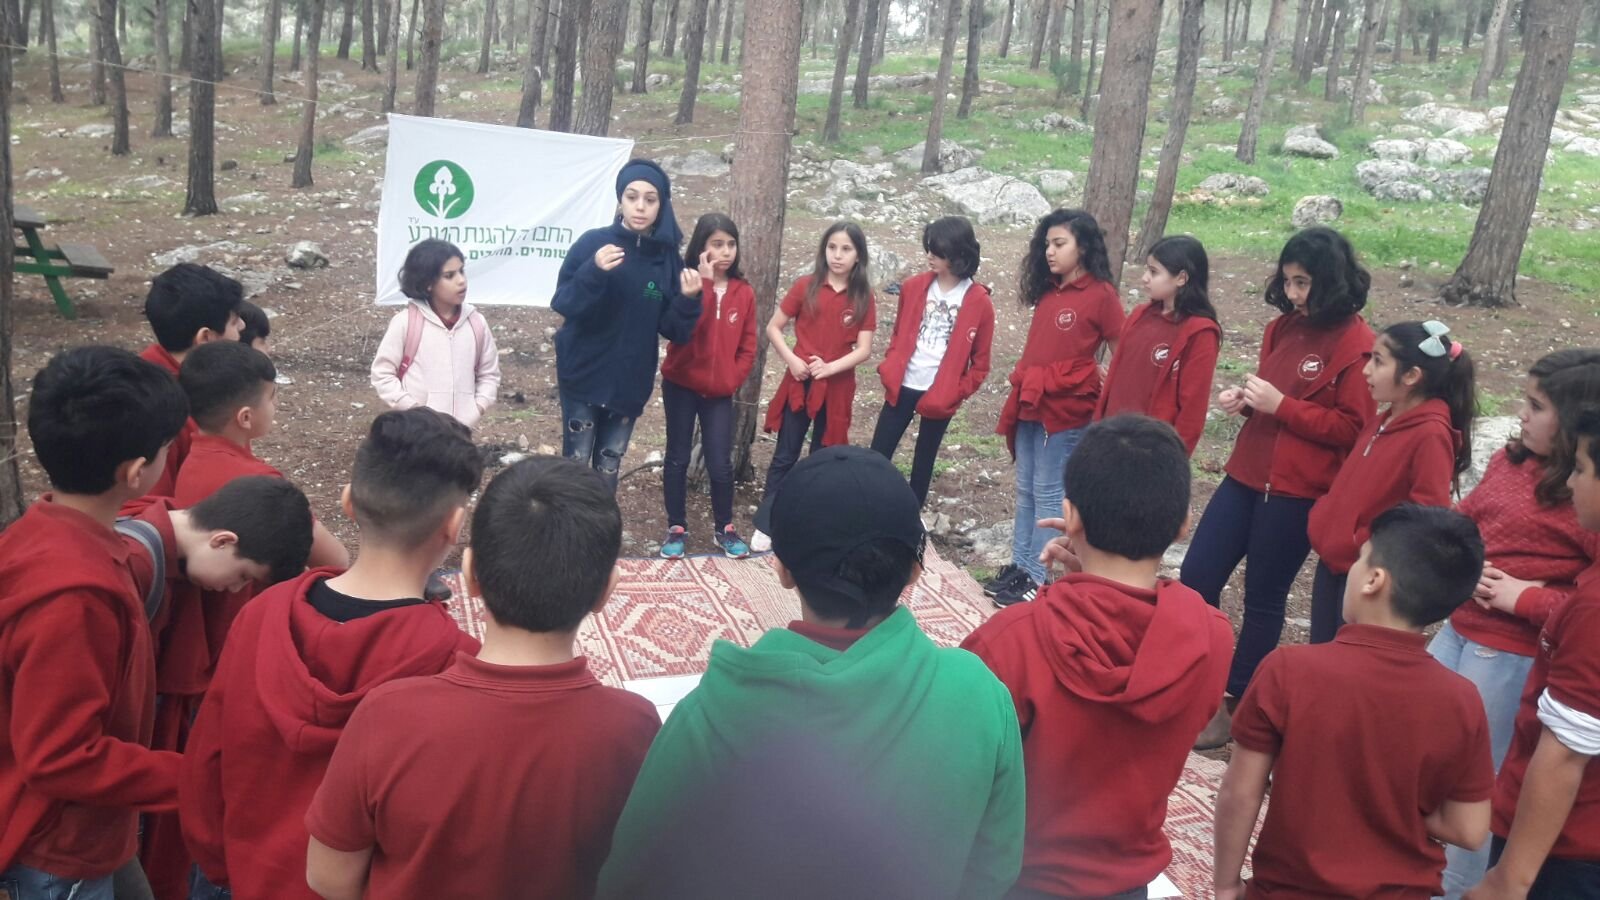 الابتدائيّة جولس "ب" تحتفل مع جمعيّة حماية الطّبيعة بعيد غرس الأشجار في حرش أحيهود-25